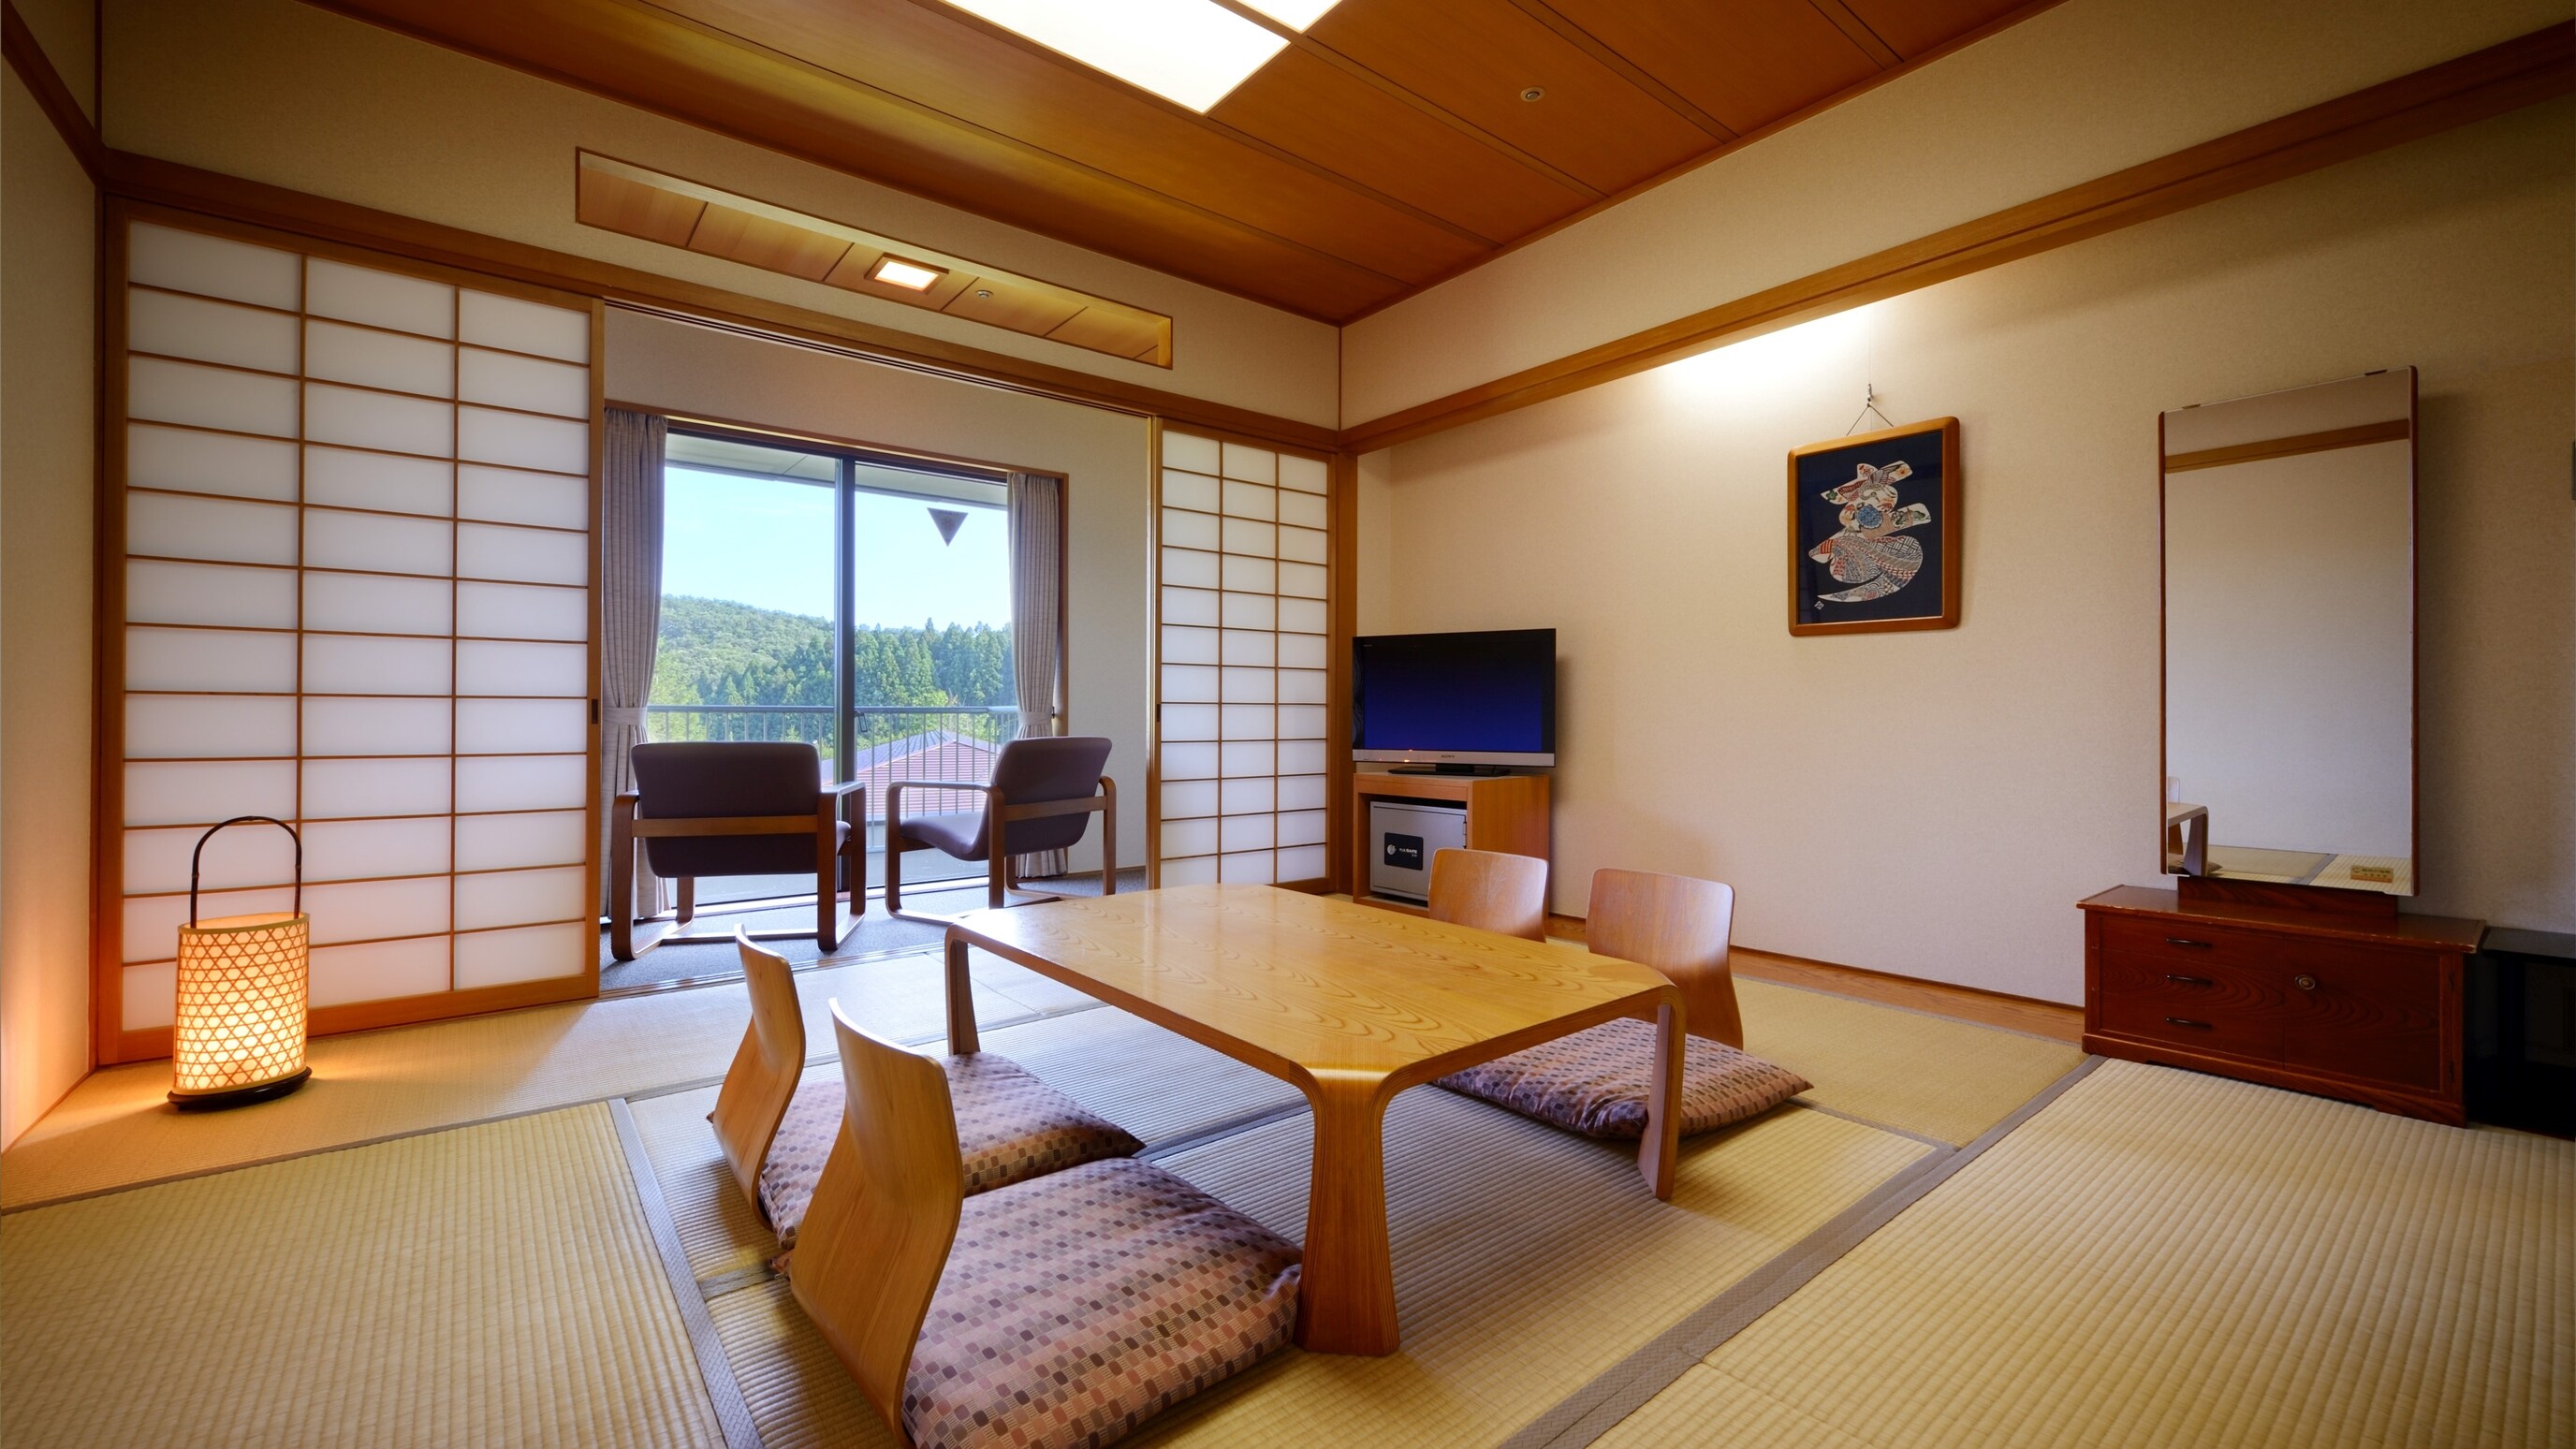 ชั้น 3 * ห้องสไตล์ญี่ปุ่น 8 เสื่อทาทามิ (พร้อมอ่างอาบน้ำและห้องสุขา)